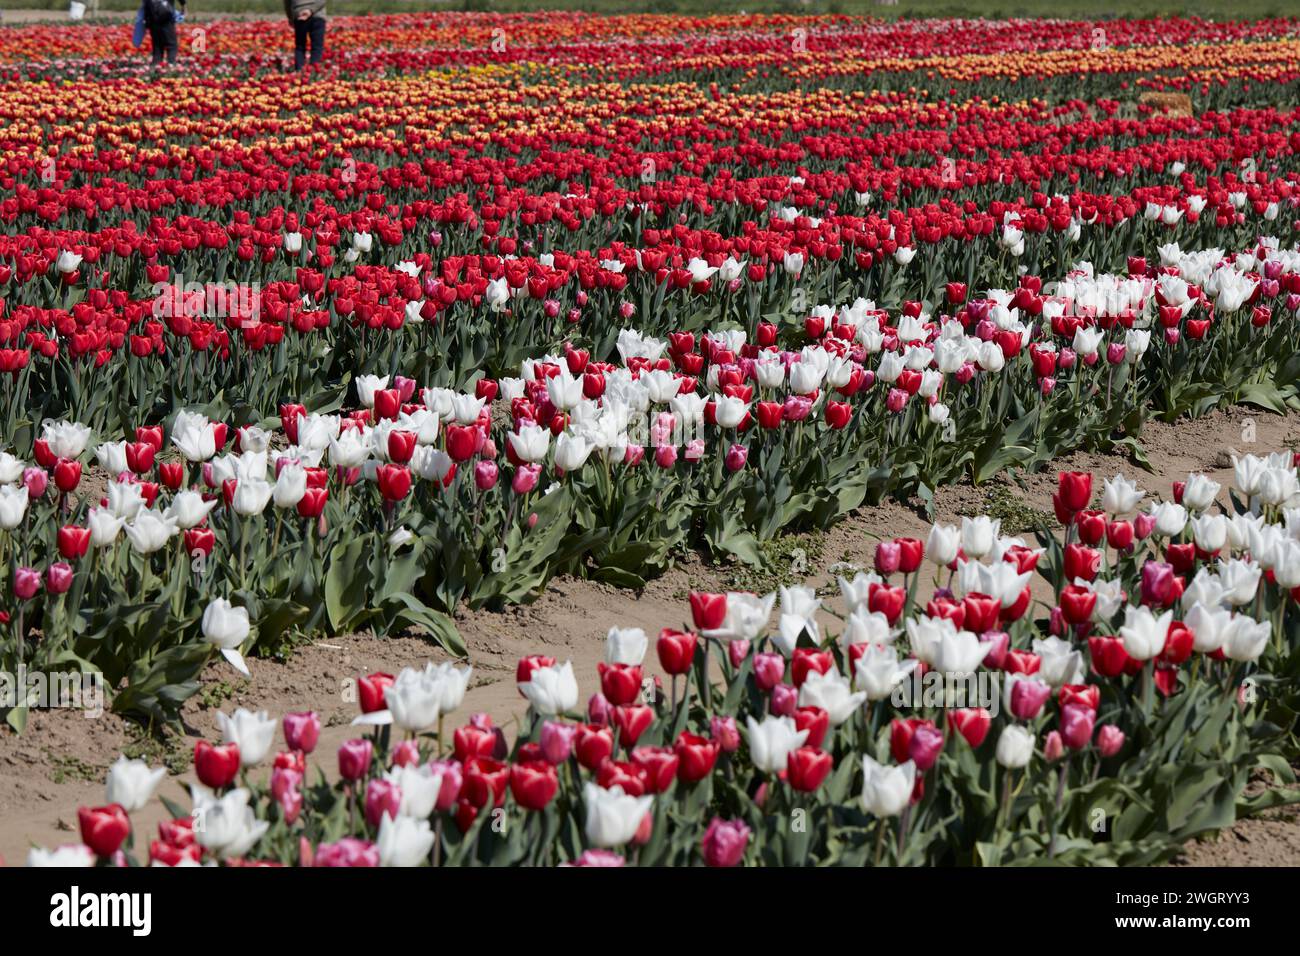 Tulpenfeld mit Blumen in weiß, rot, lila, gelb und Menschen im Frühlingssonnenlicht Stockfoto